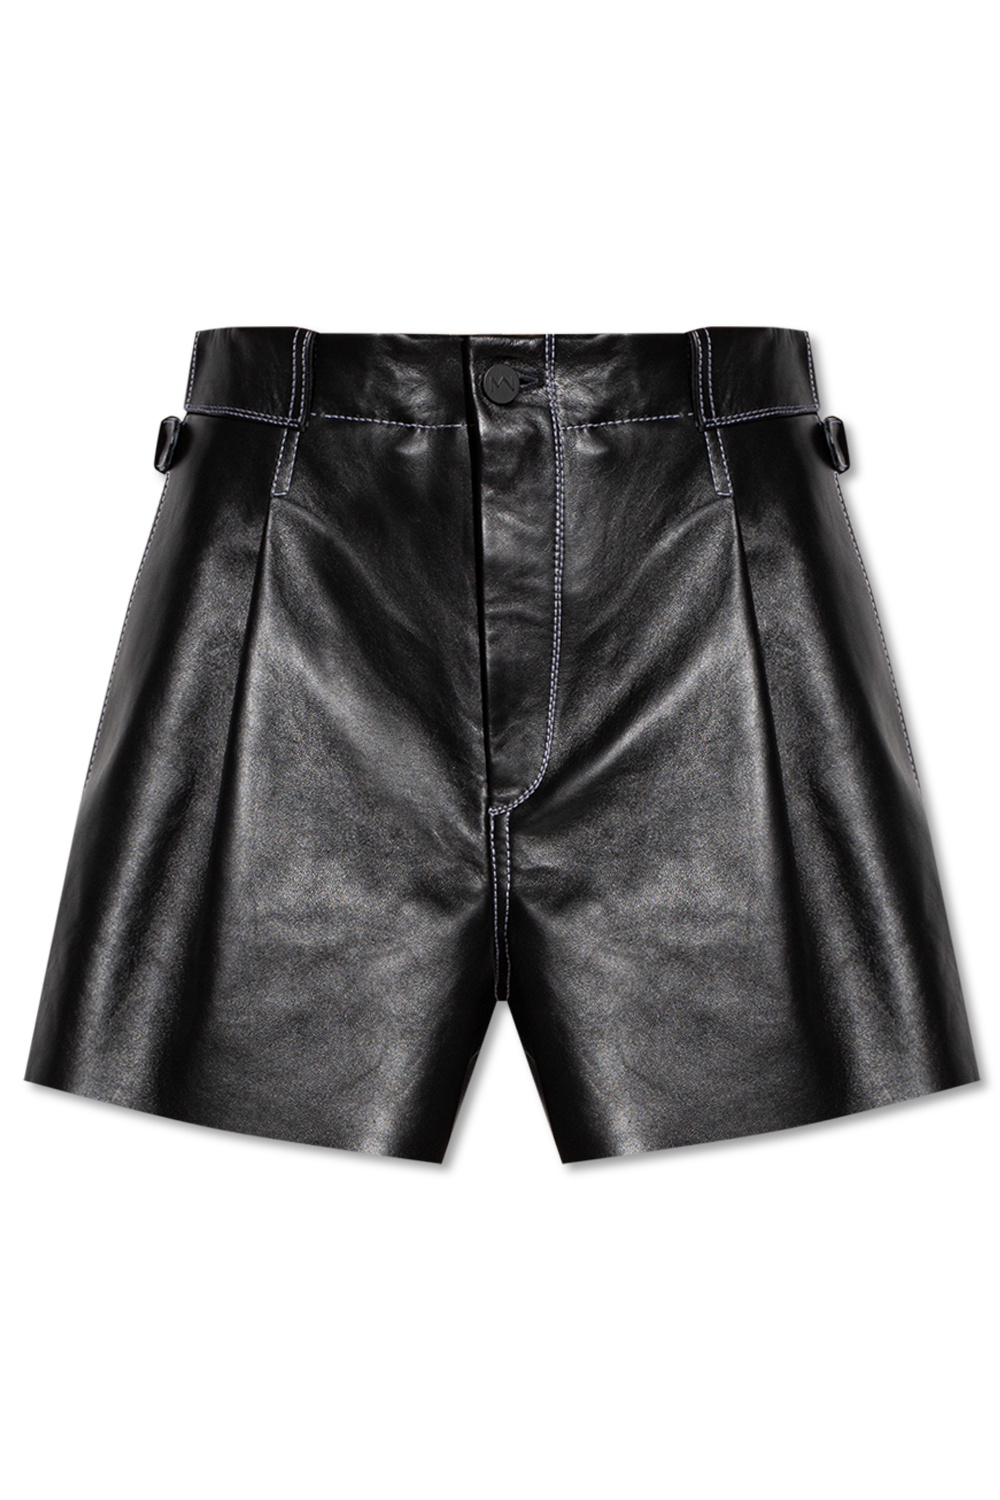 The Mannei ‘Sakib’ leather Longoria shorts